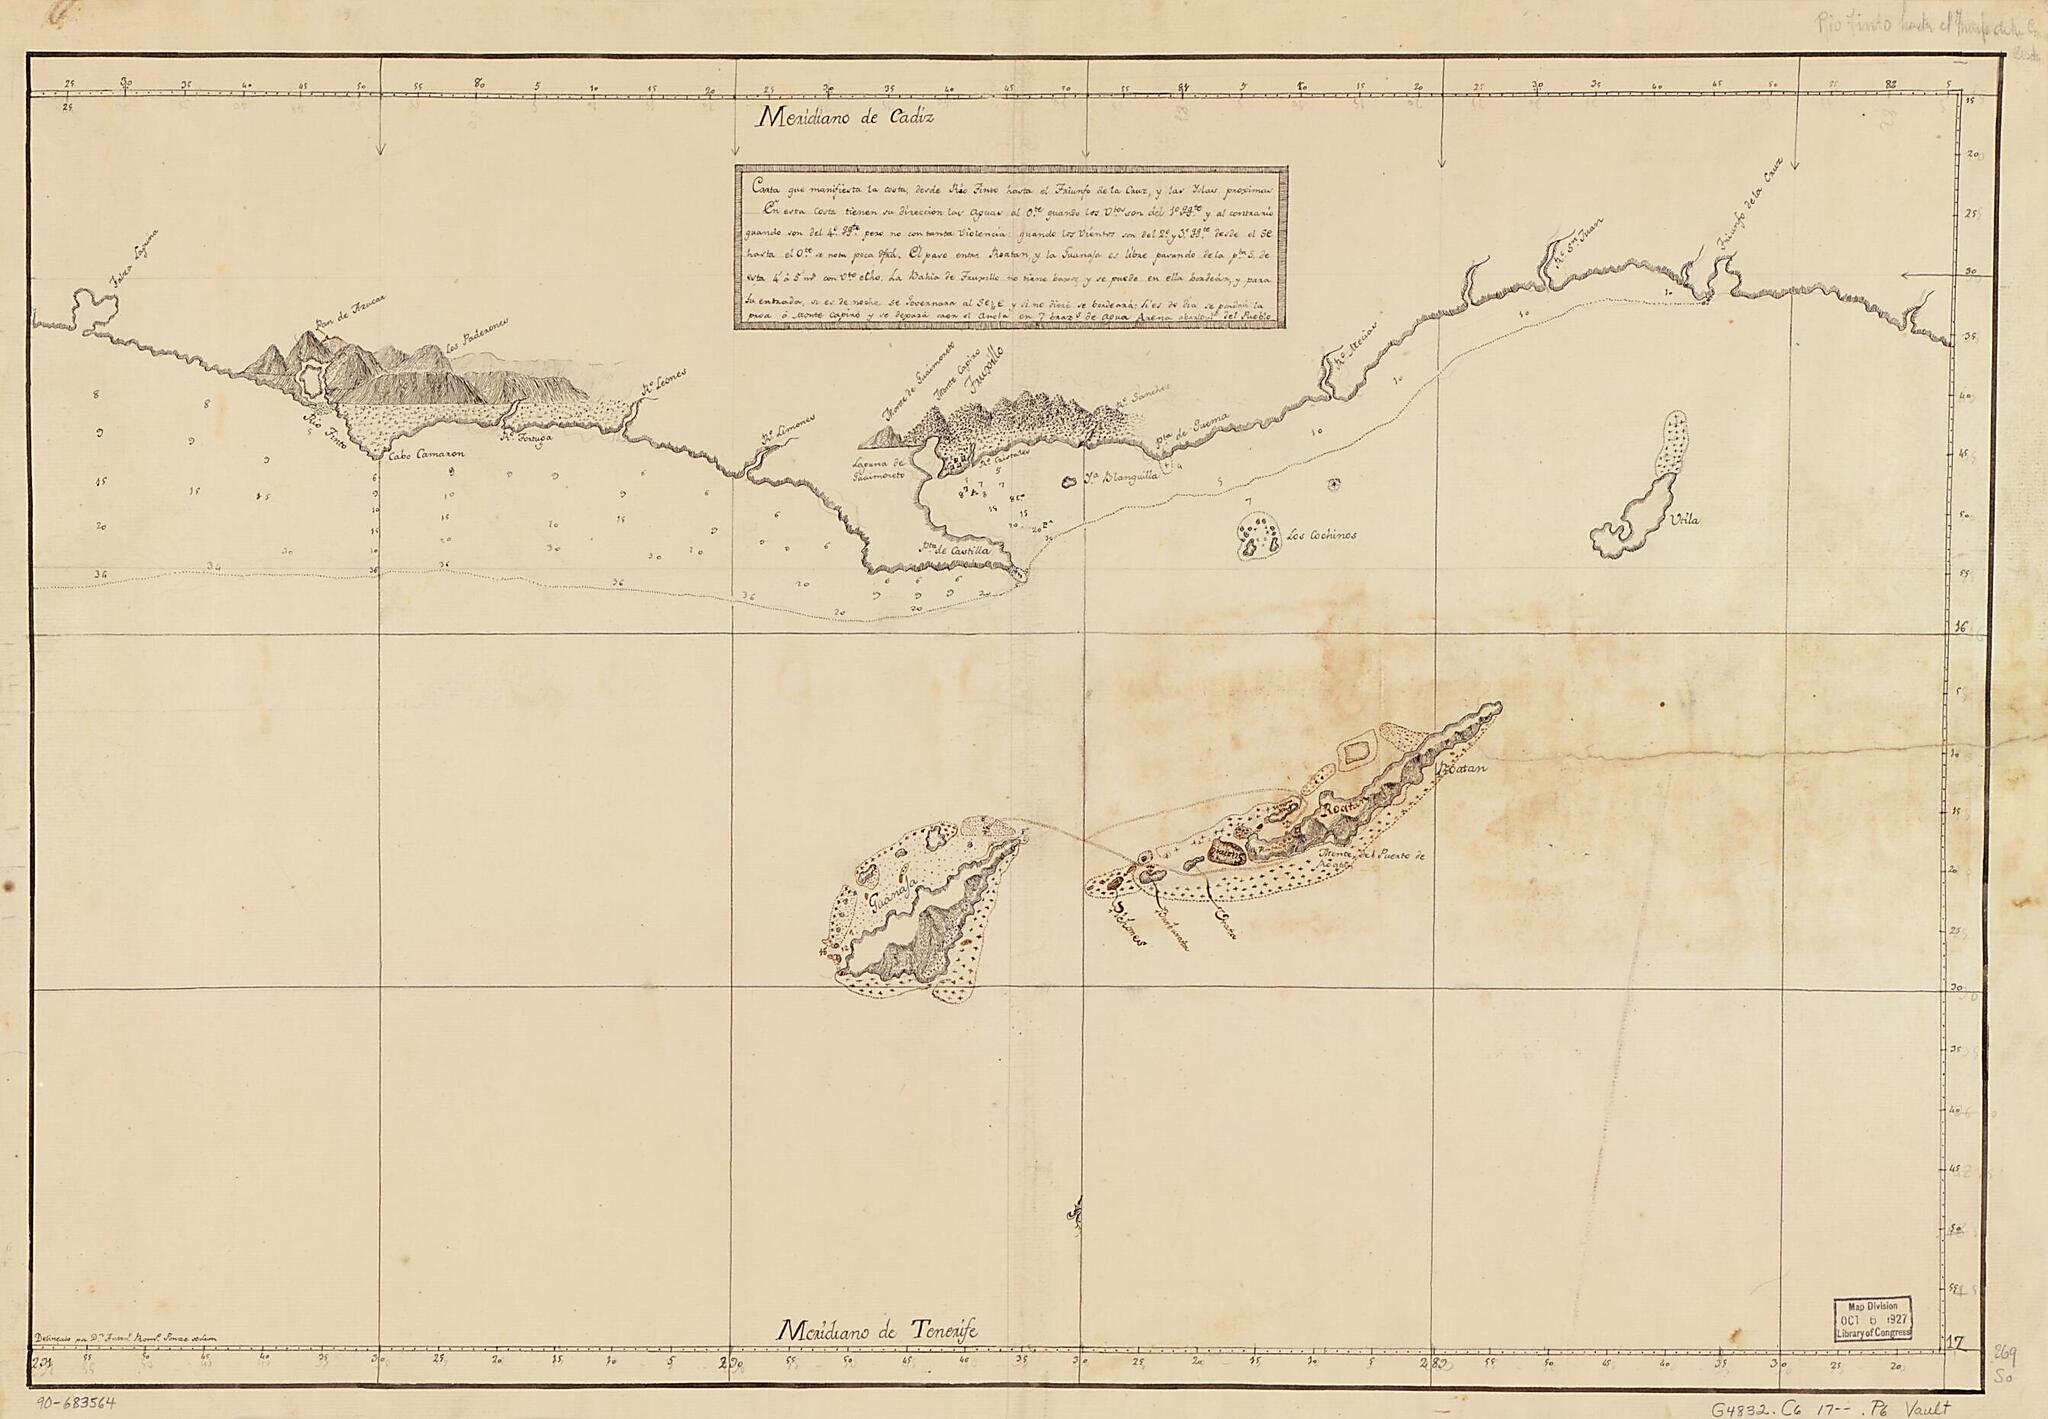 This old map of Carta Que Manifiesta La Costa Desde Río Tinto Hasta El Triunfo De La Cruz Y Las Islas Proximas from 1700 was created by Antono. Romo Ponze De Leon in 1700